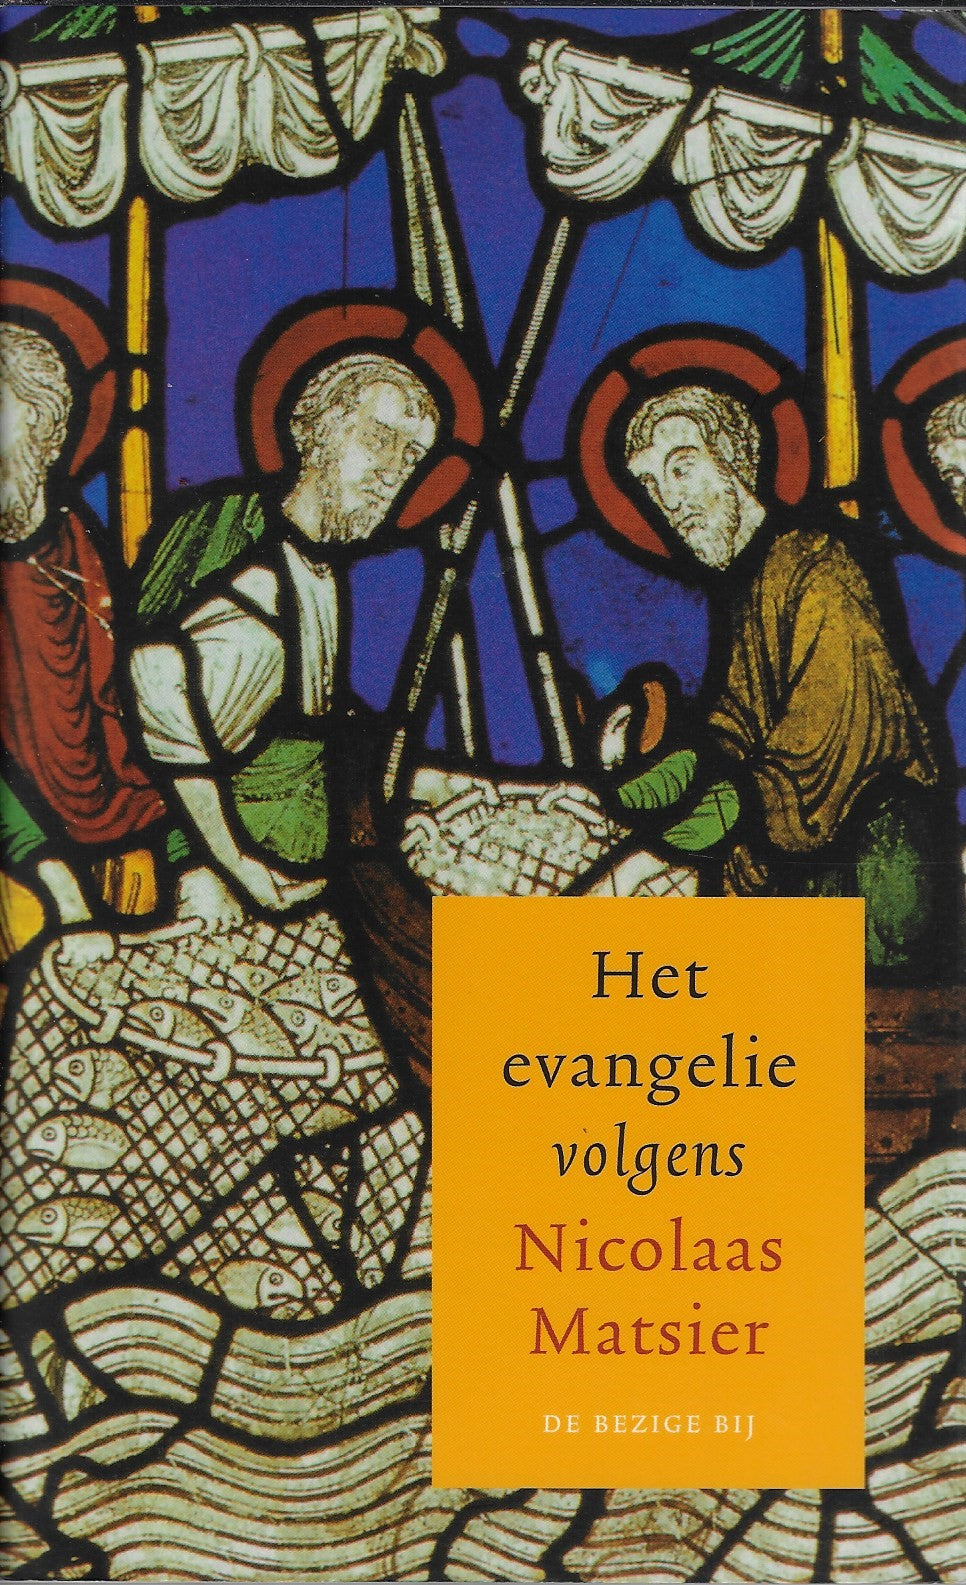 Het evangelie volgens Nicolaas Matsier